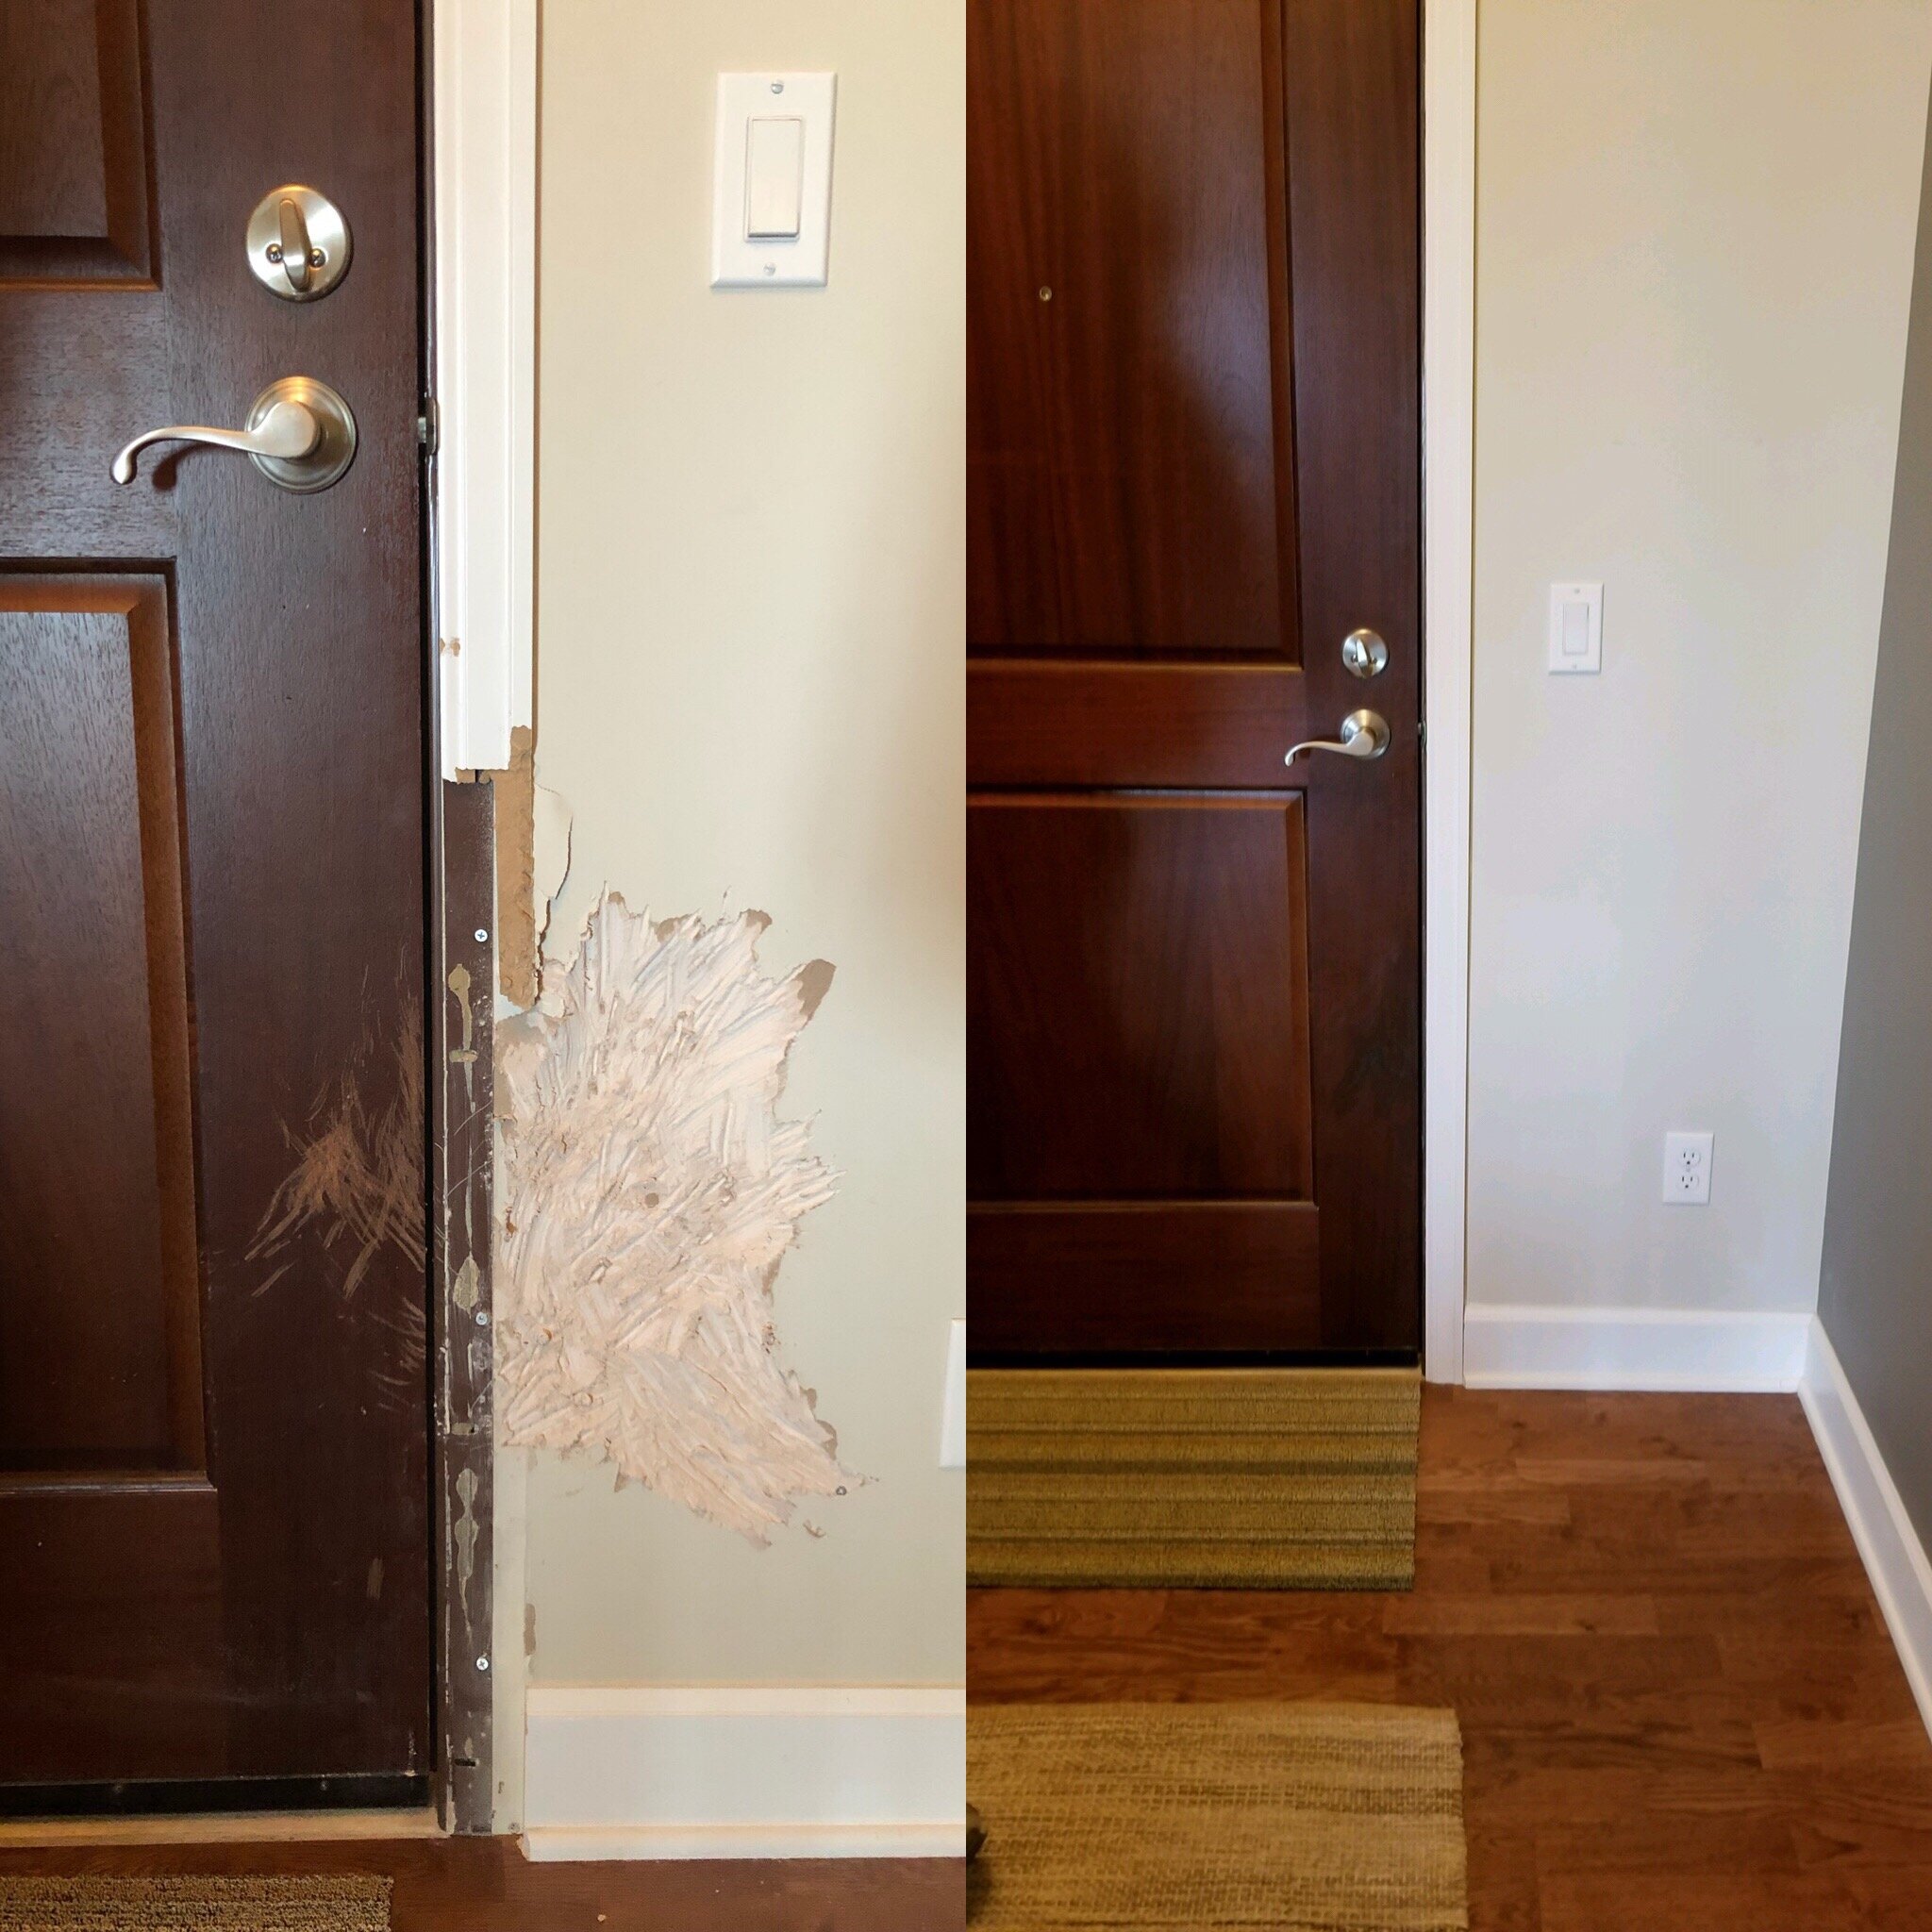 Drywall damage repairs, door repair